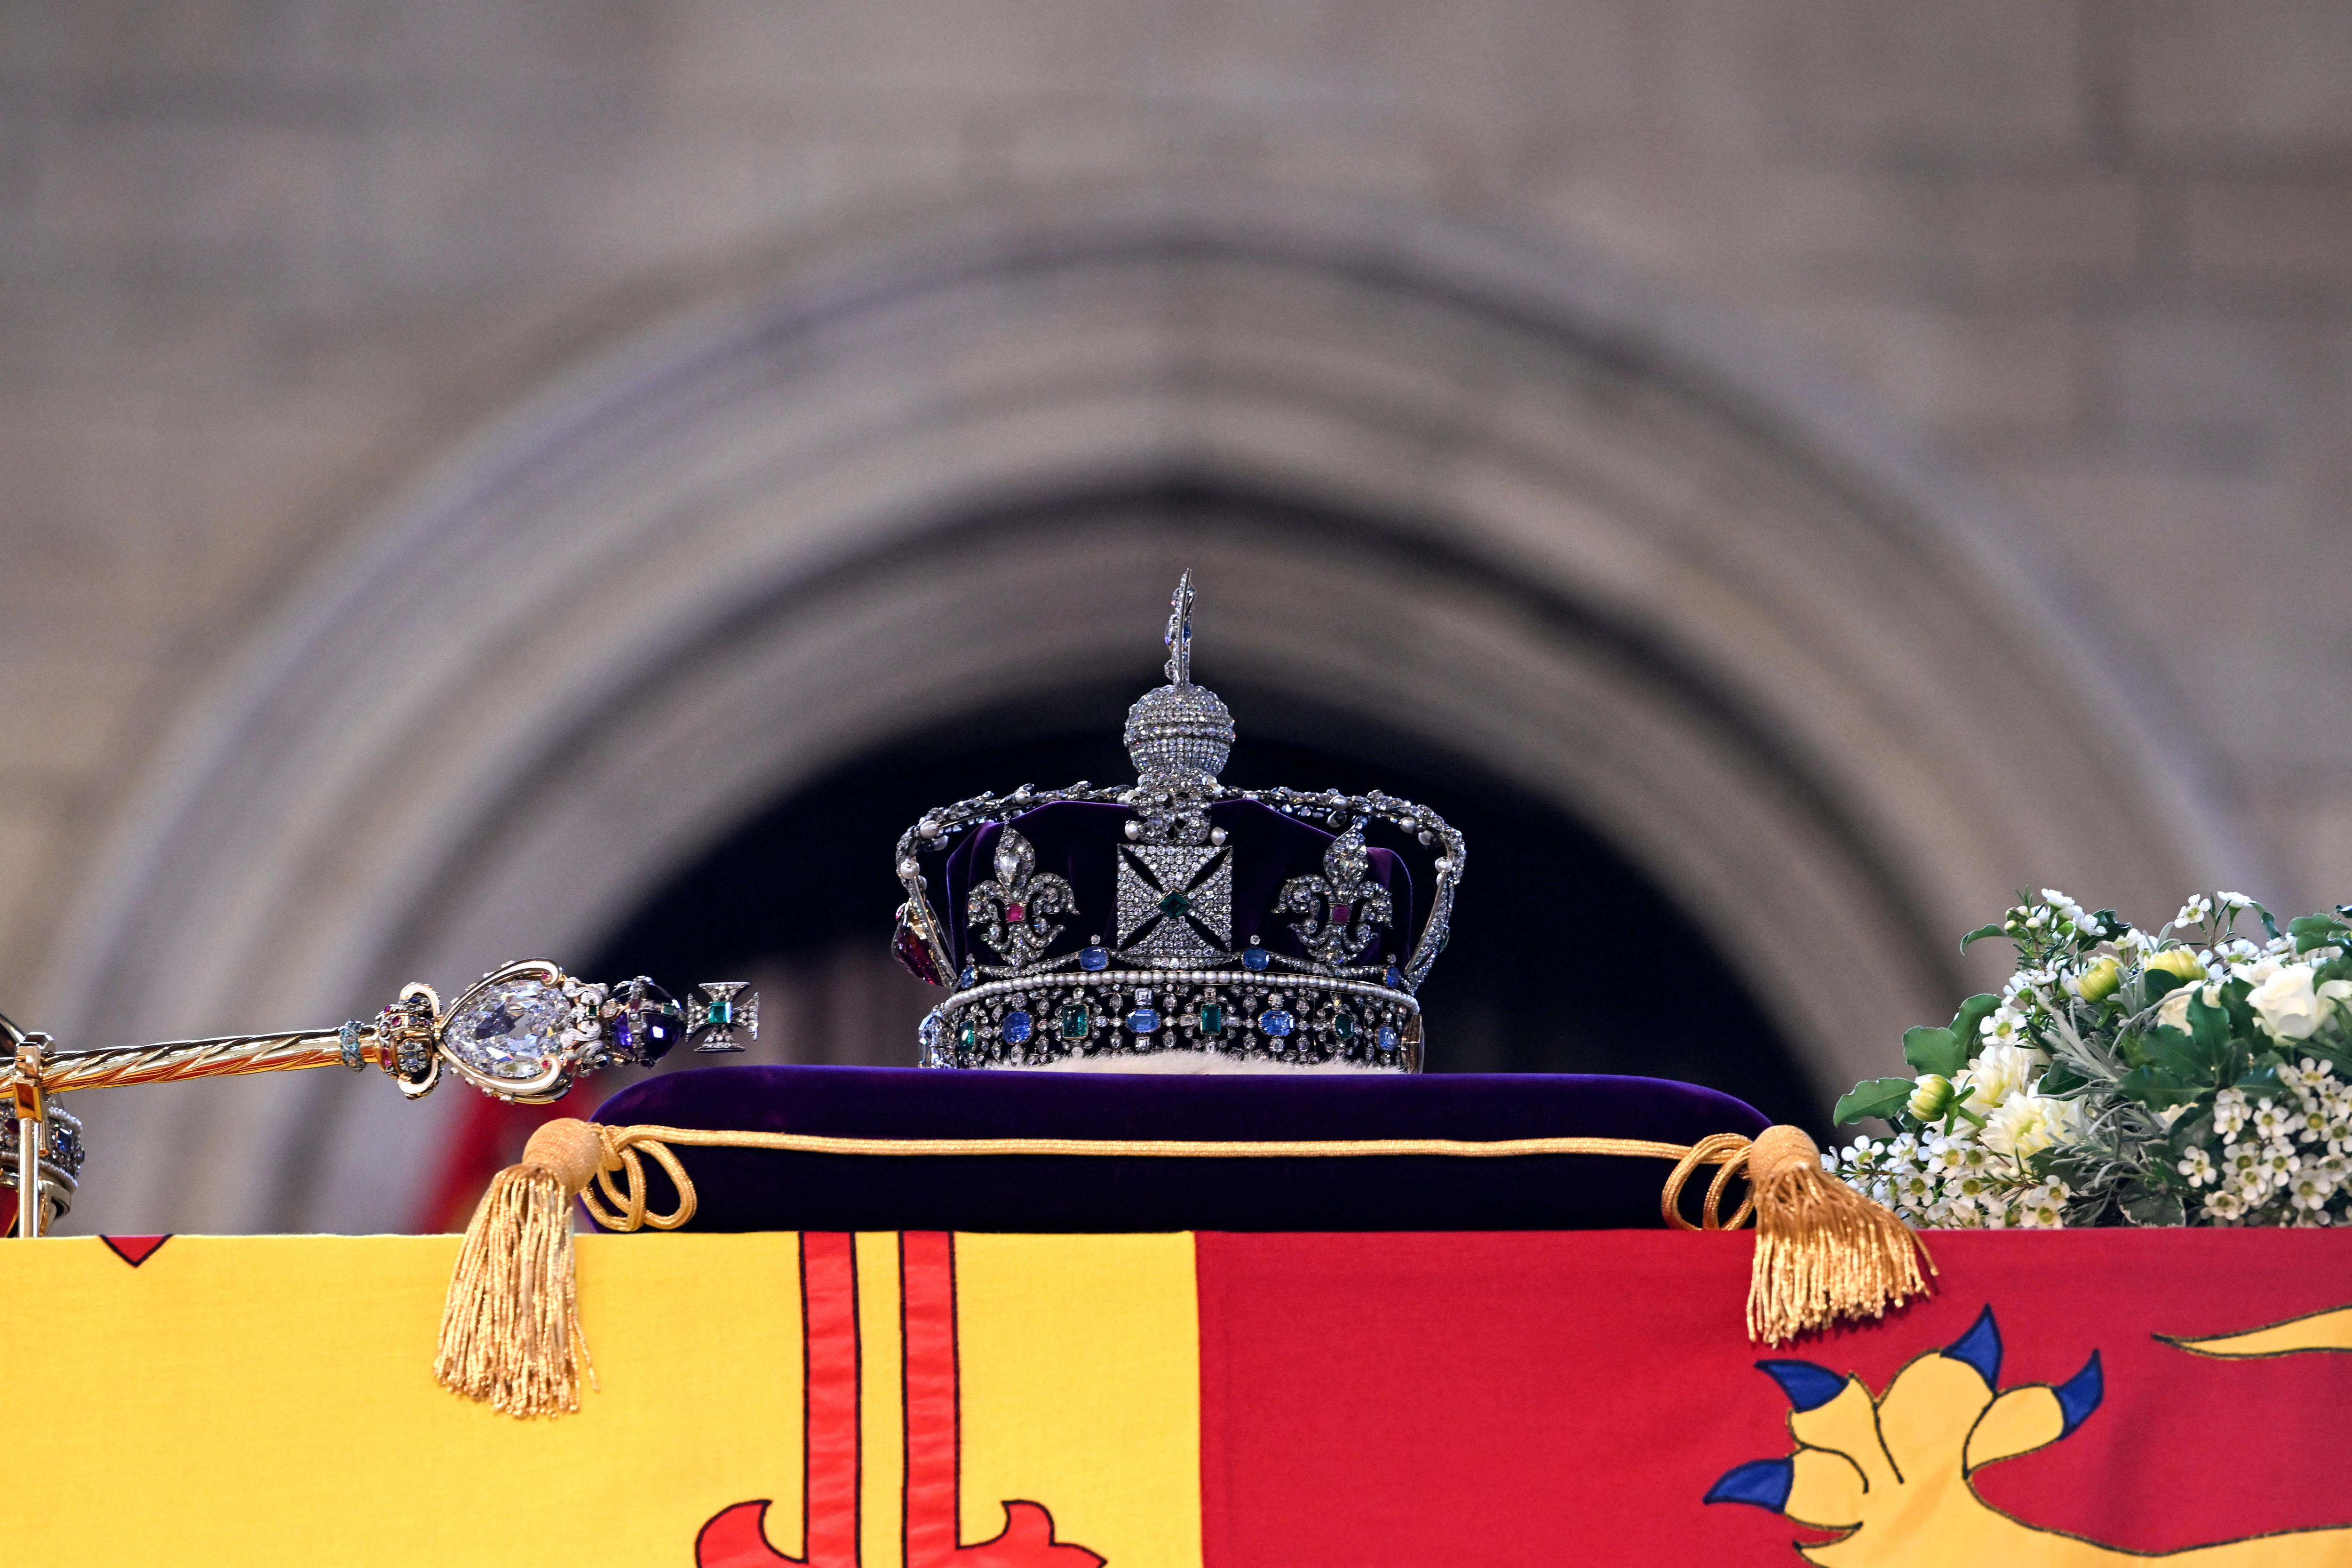 一顶华丽的王冠放在棺材顶部的紫色枕头上。